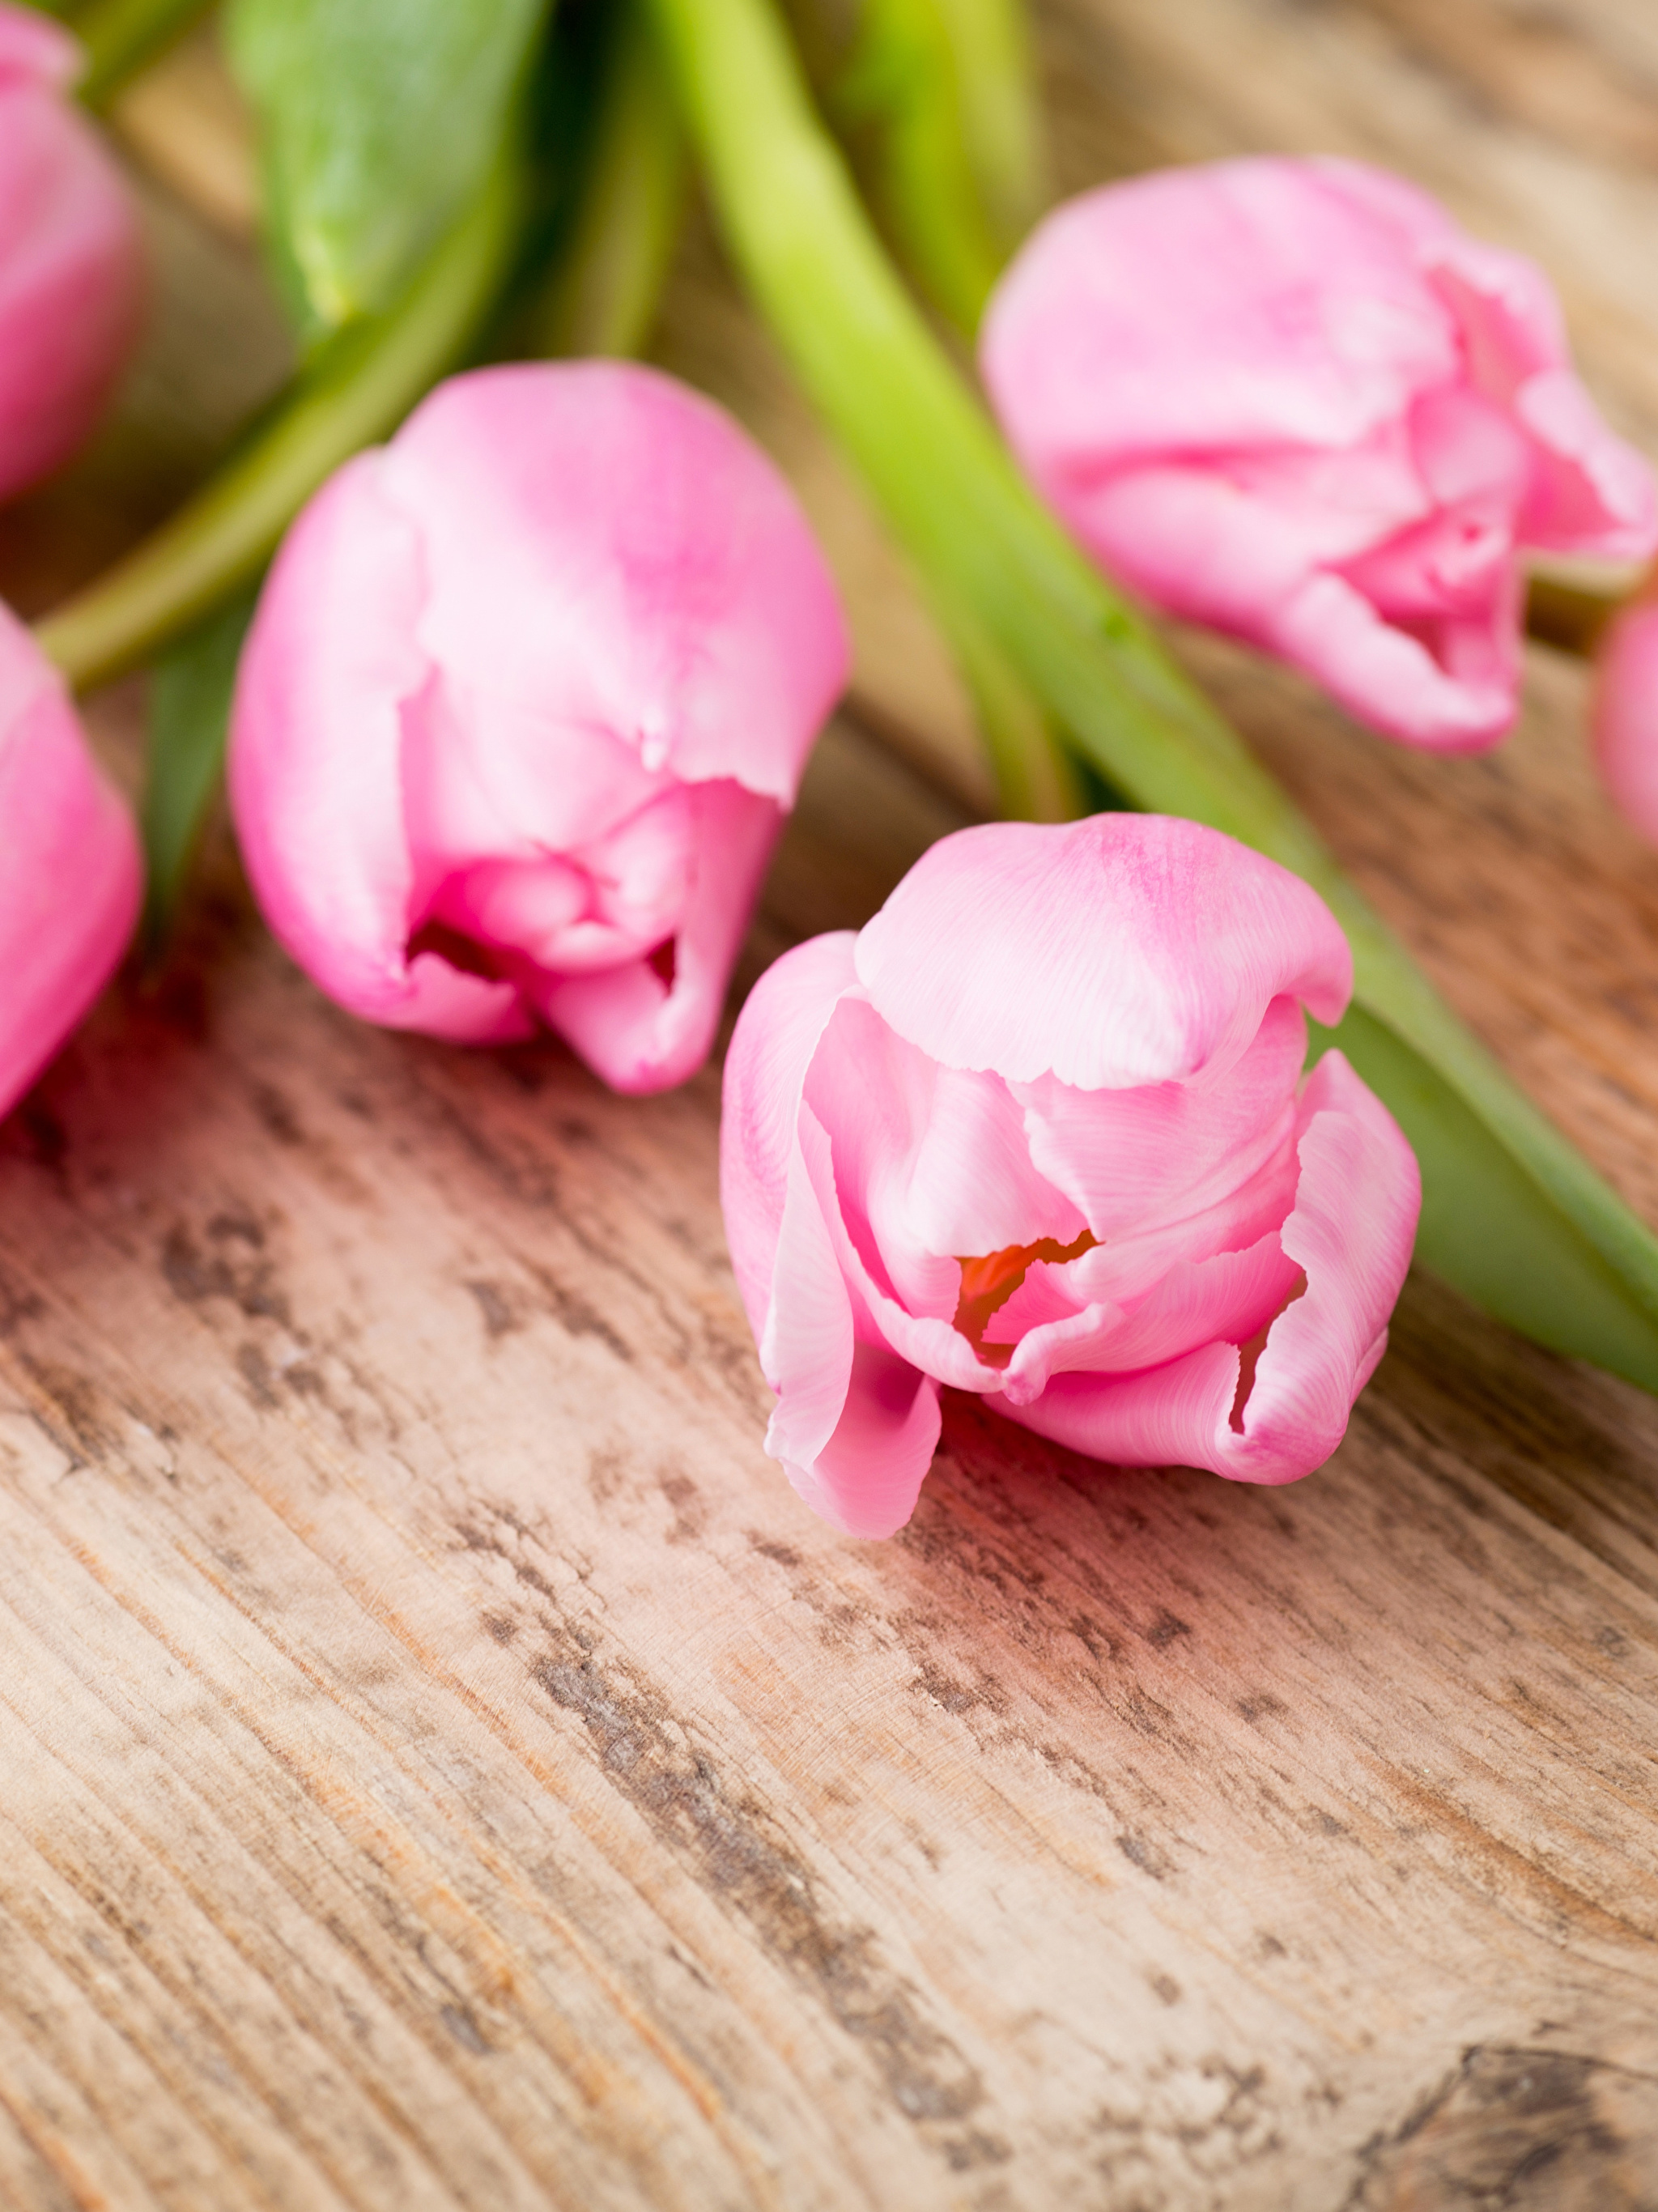 Нежные розовые тюльпаны